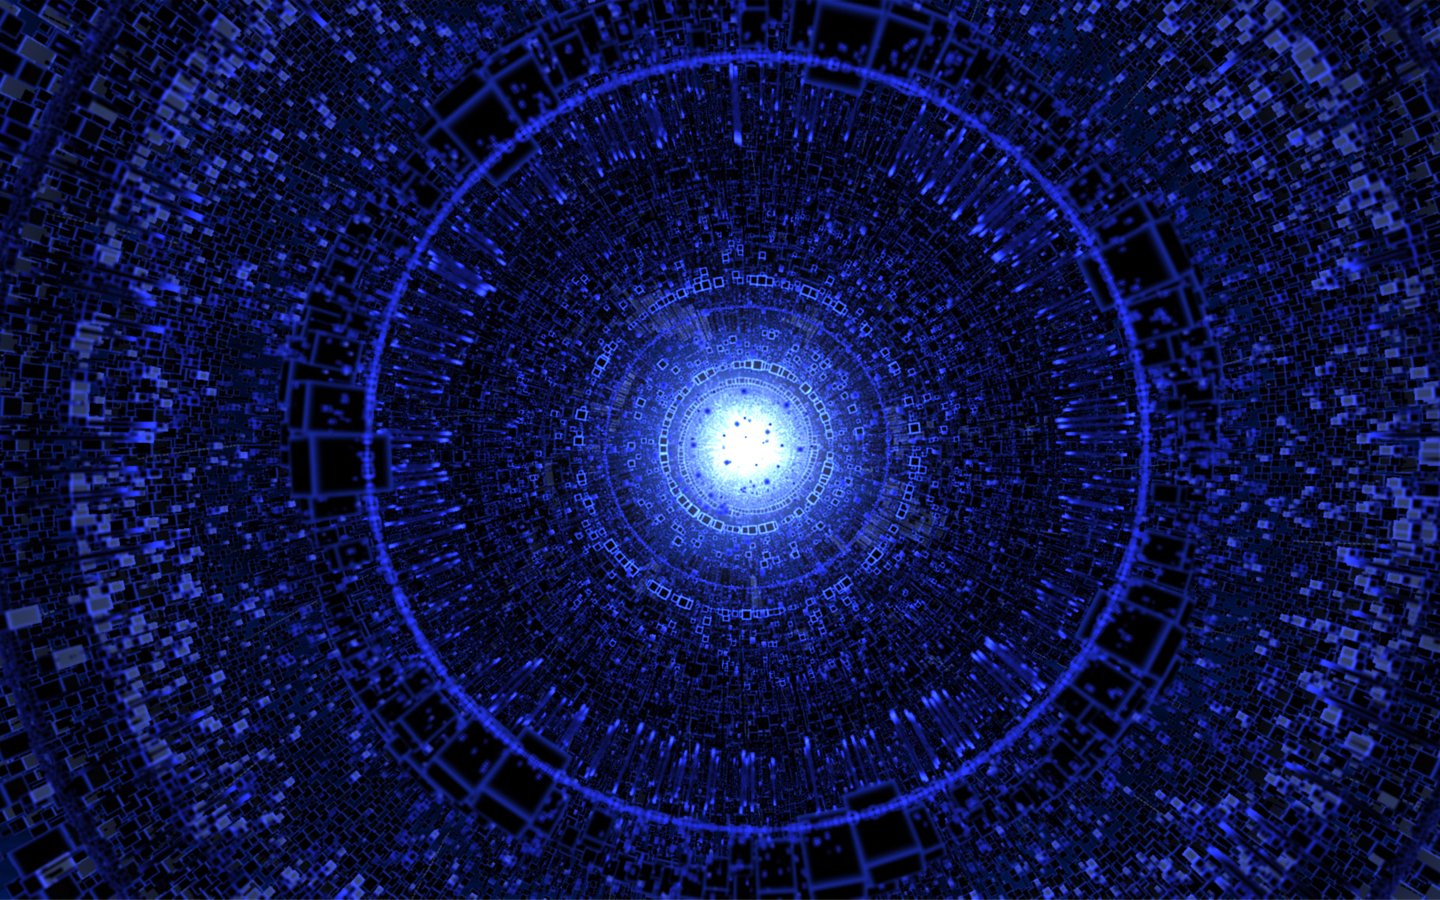 Light Abstract Blue Spiral Digital Art Wallpaper Background